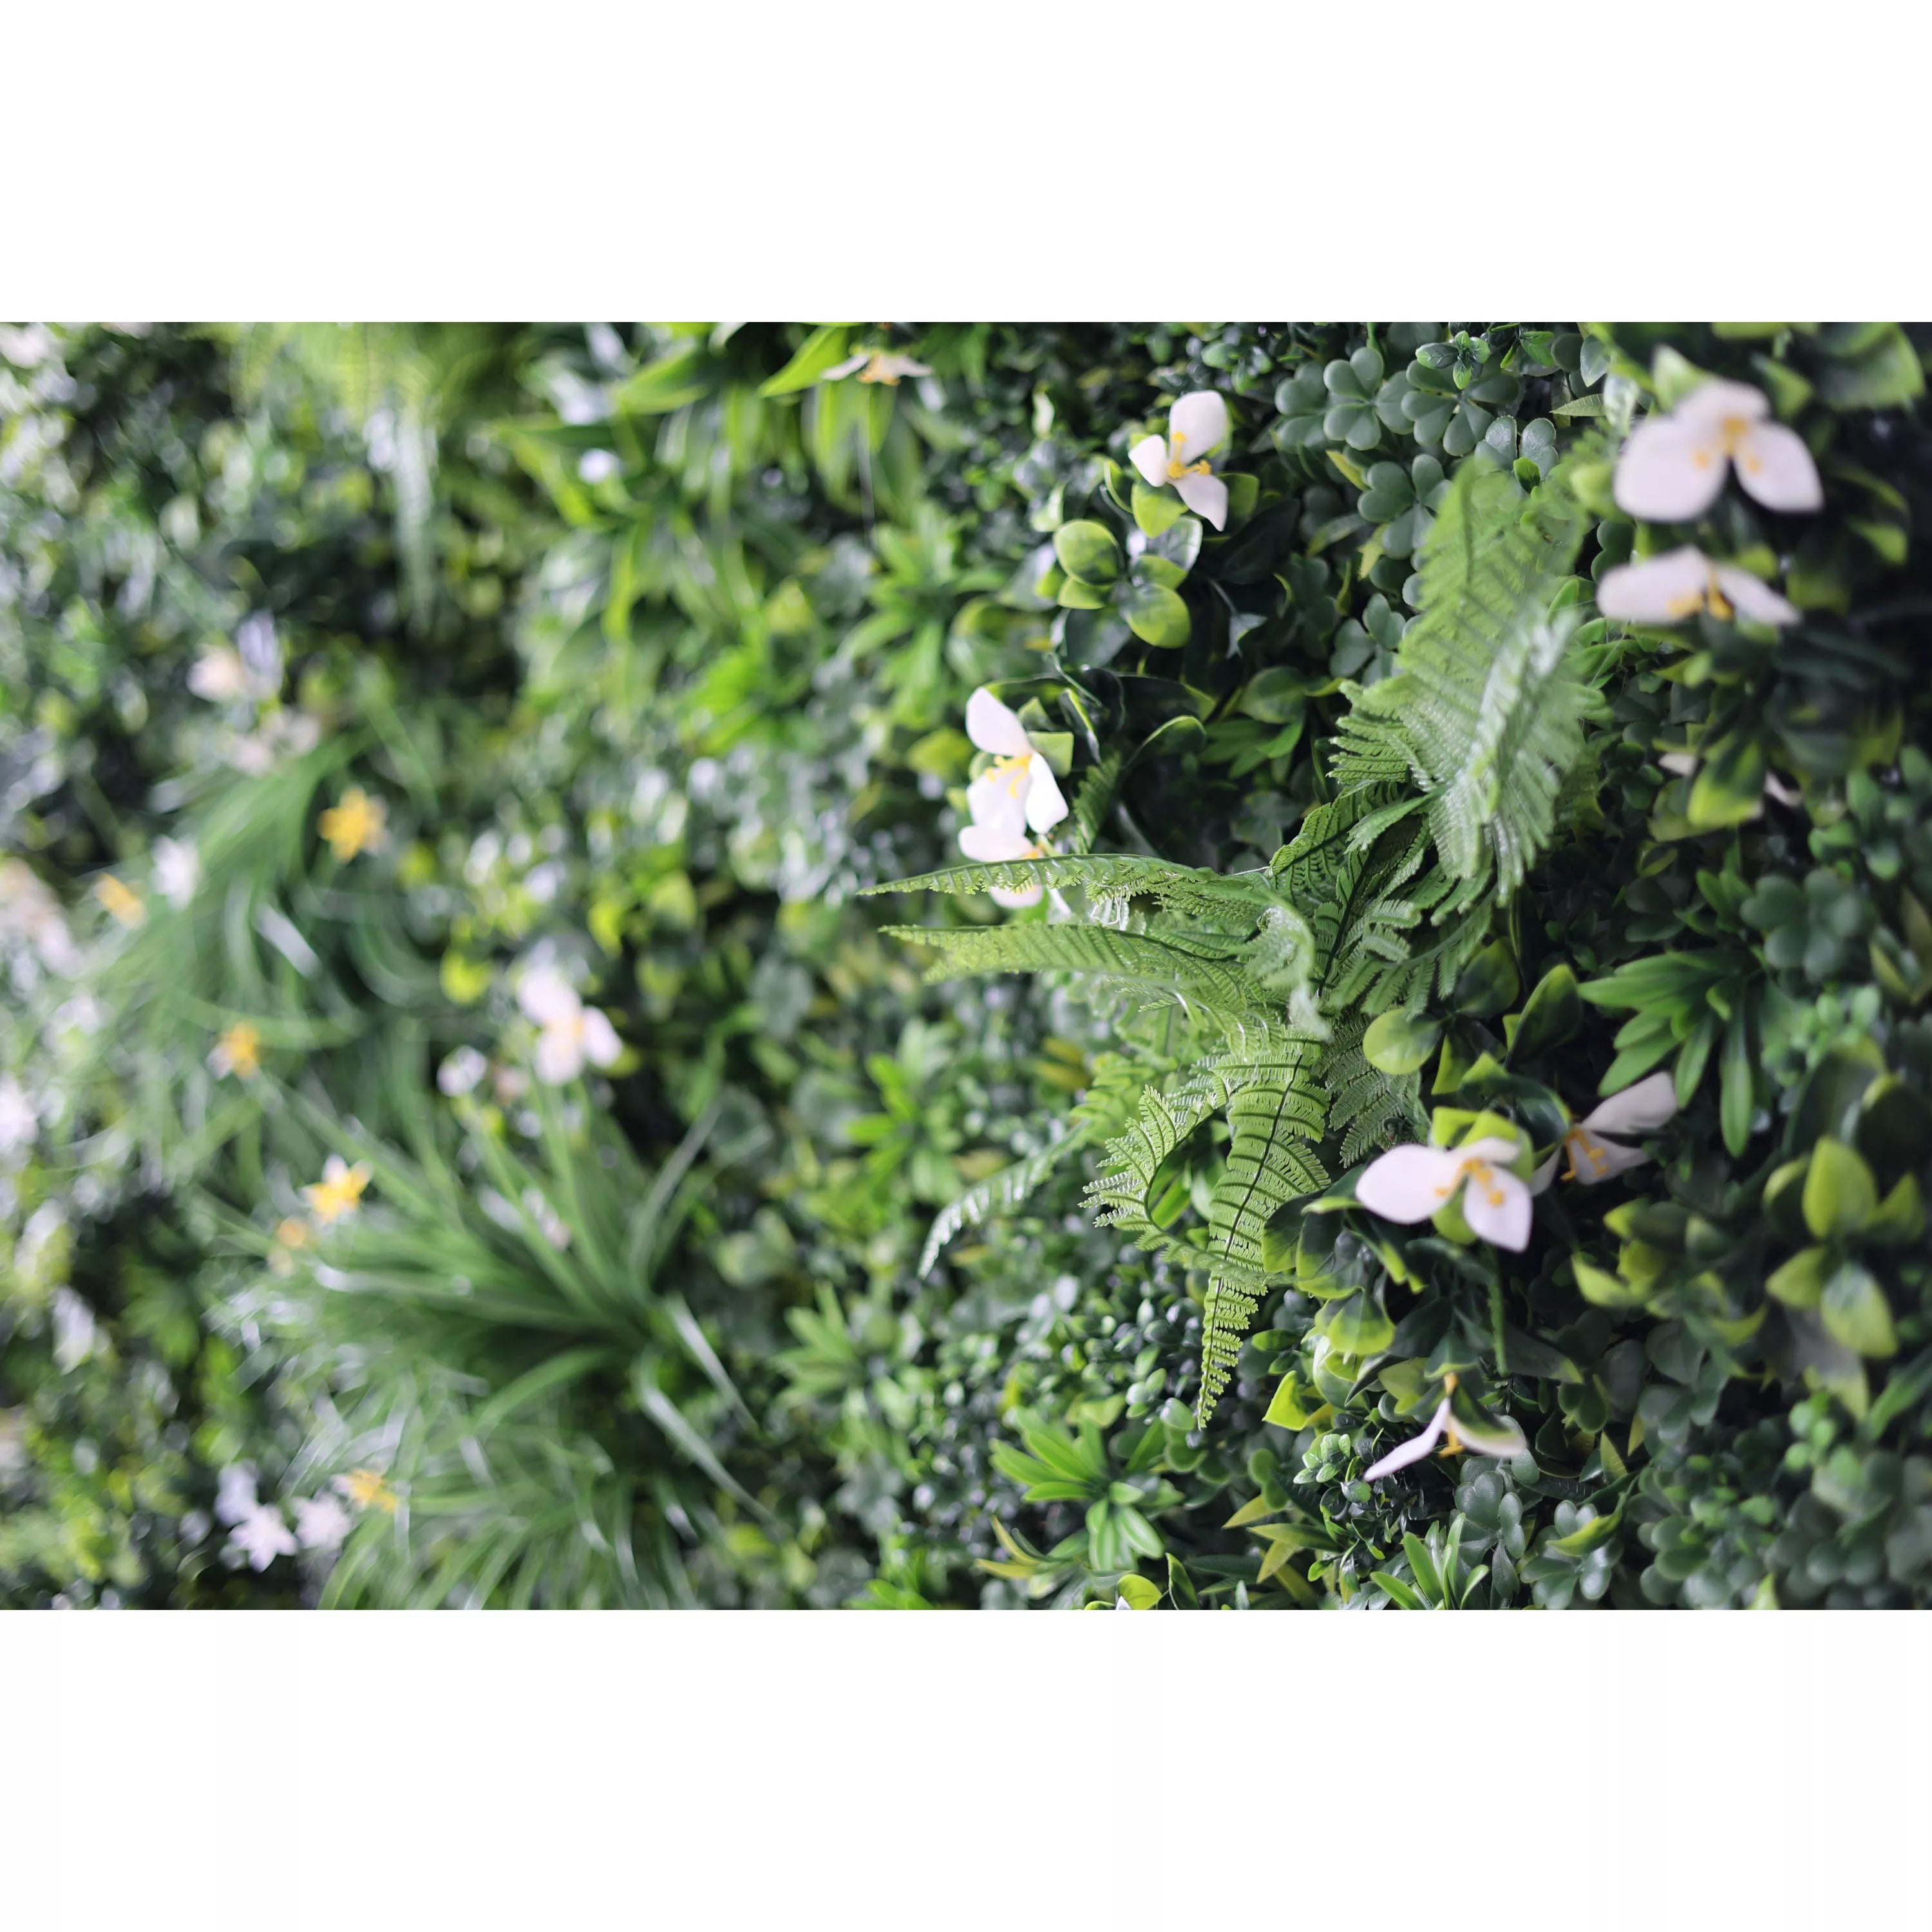 زهور فالار قماش اصطناعي نابض بالحياة عشب أخضر خلفية جدار زفاف ، ديكور حفلات زهور ، حدث